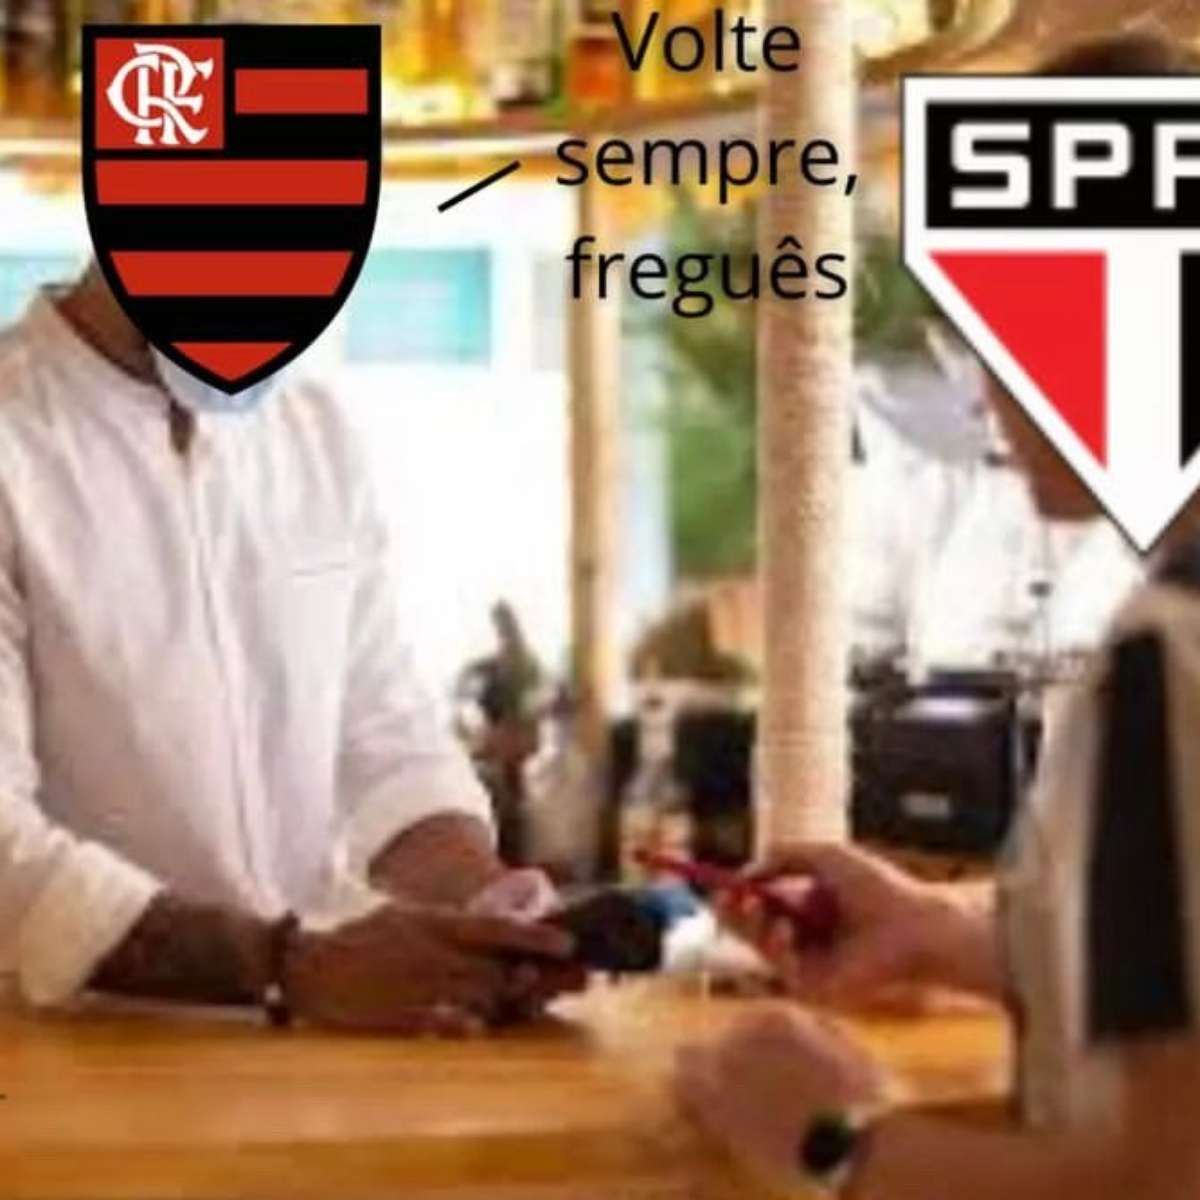 Atropelo do Flamengo em cima do São Paulo de Ceni rende memes na